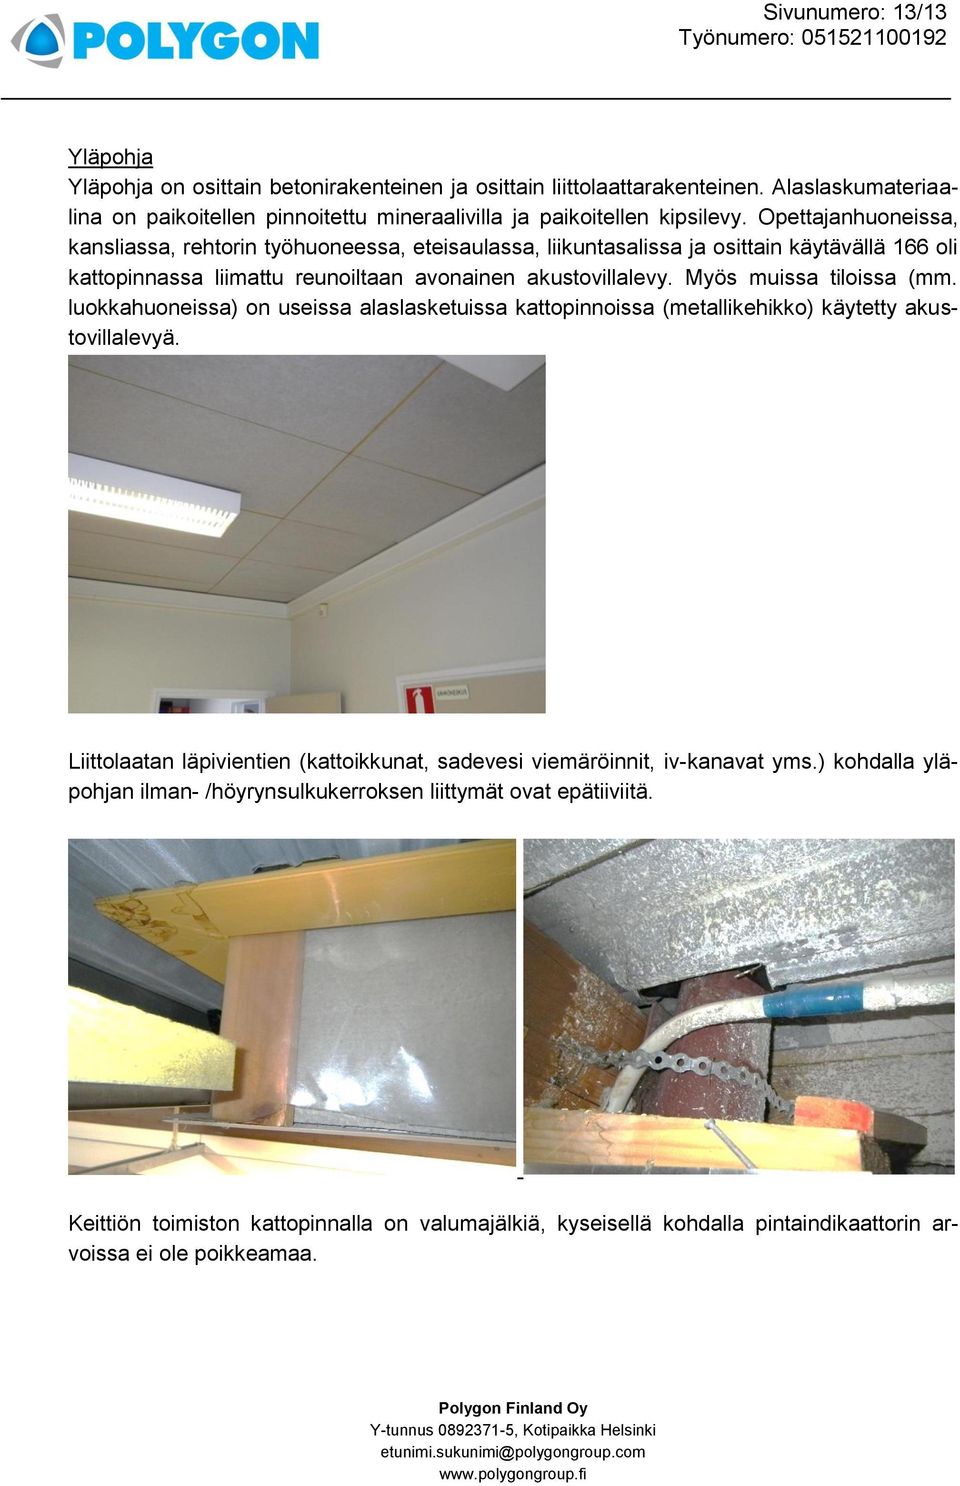 Myös muissa tiloissa (mm. luokkahuoneissa) on useissa alaslasketuissa kattopinnoissa (metallikehikko) käytetty akustovillalevyä.